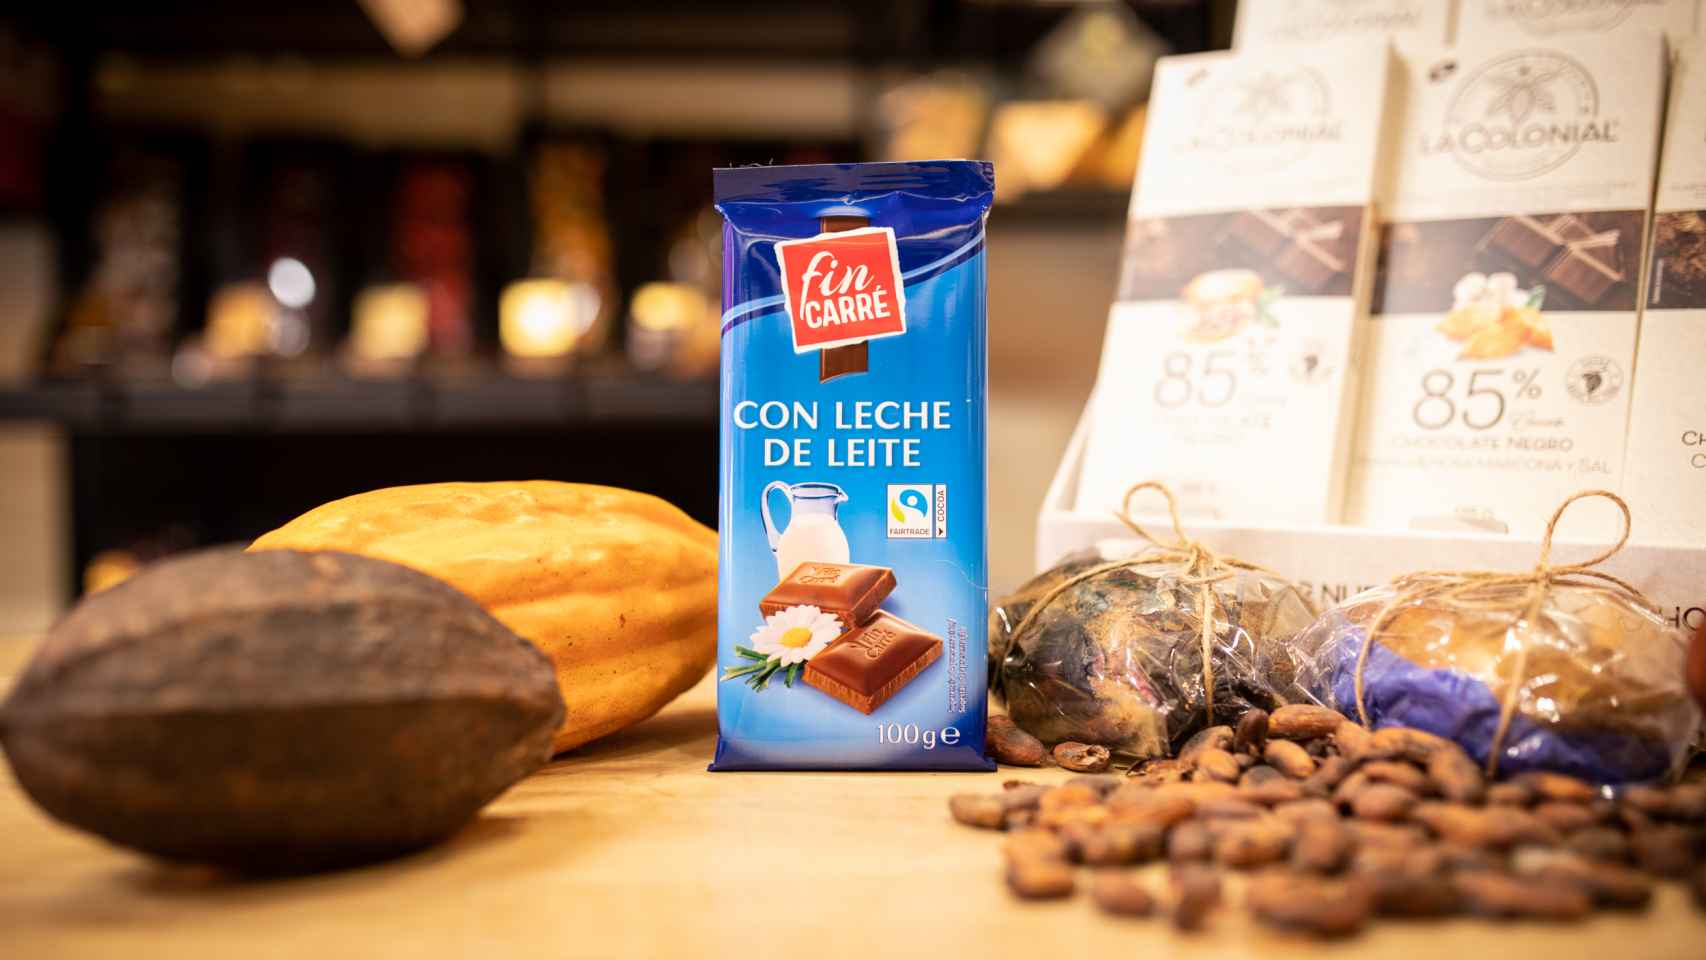 La tableta de chocolate con leche Fin Carré, la marca blanca de Lidl.